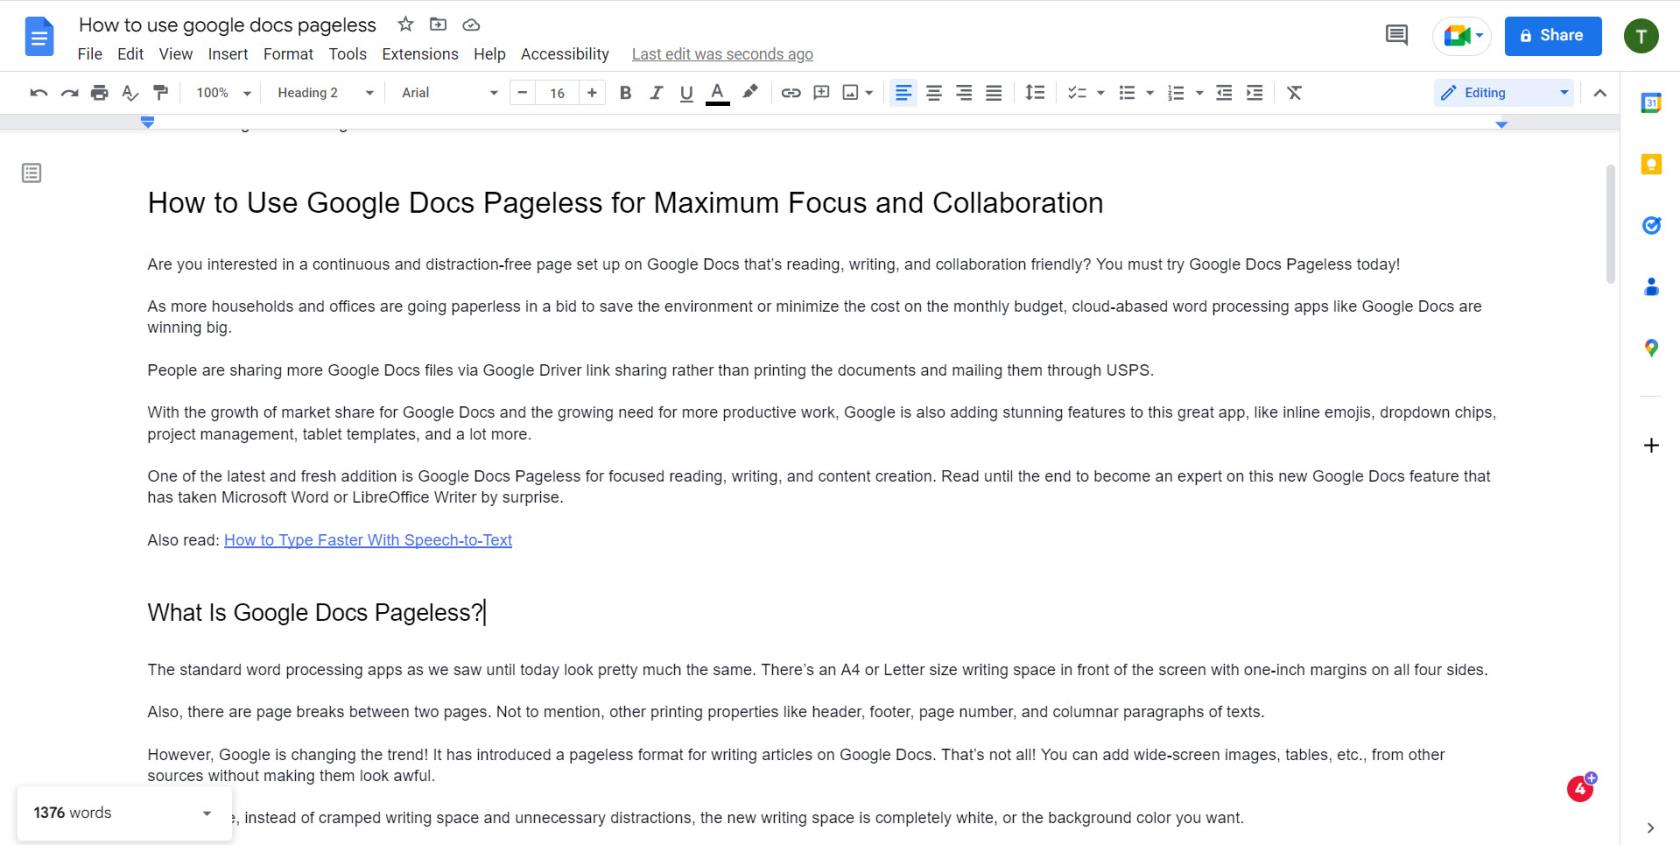 Come utilizzare Google Docs senza pagine per la massima attenzione e collaborazione